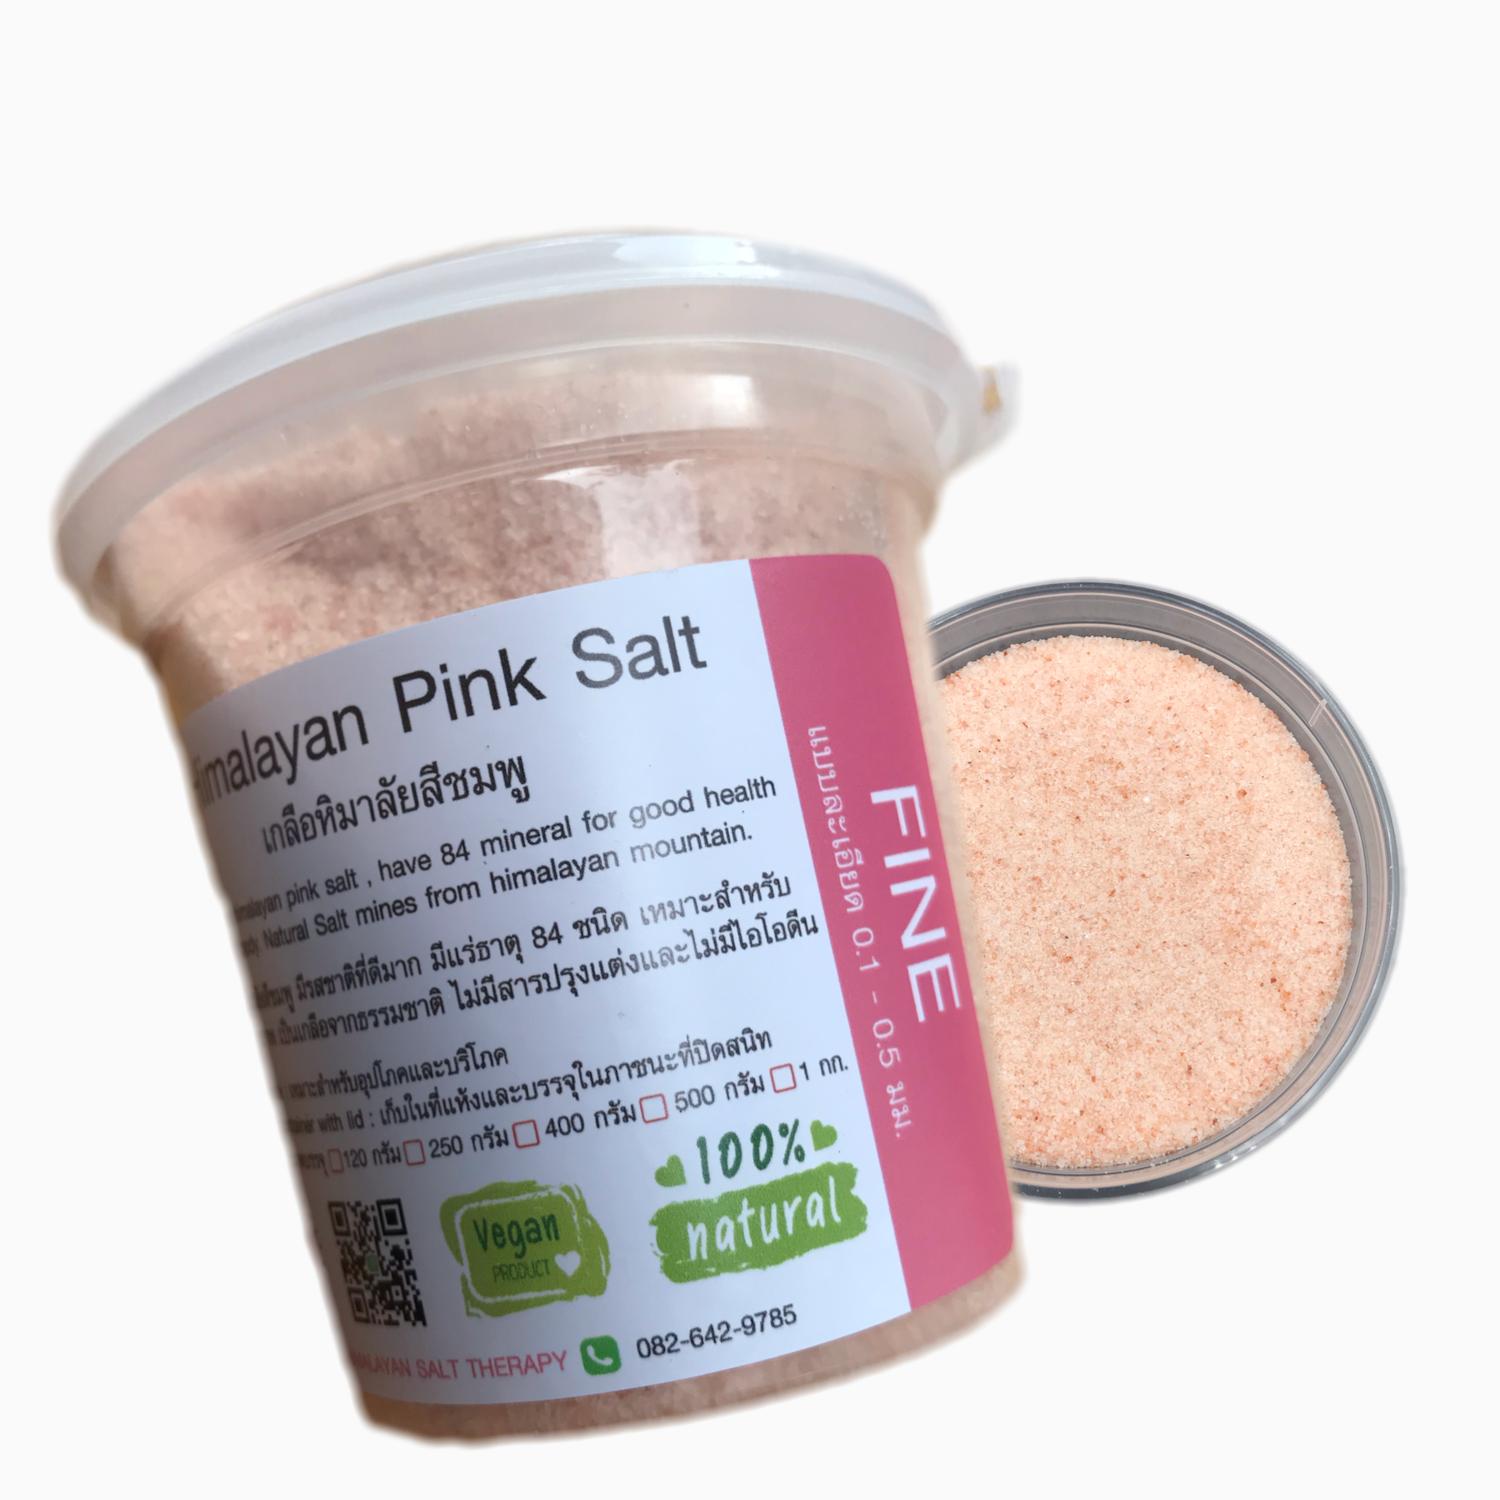 เกลือหิมาลายันสีชมพูแท้  200 กรัม แบบละเอียด เกรดอาหารบริโภคดีที่สุด  Himalayan Pink Salt Flne Food Grade  200 gram. จากเทือกเขาหิมาลัย คีโต เกลือชมพู ส่งฟรี